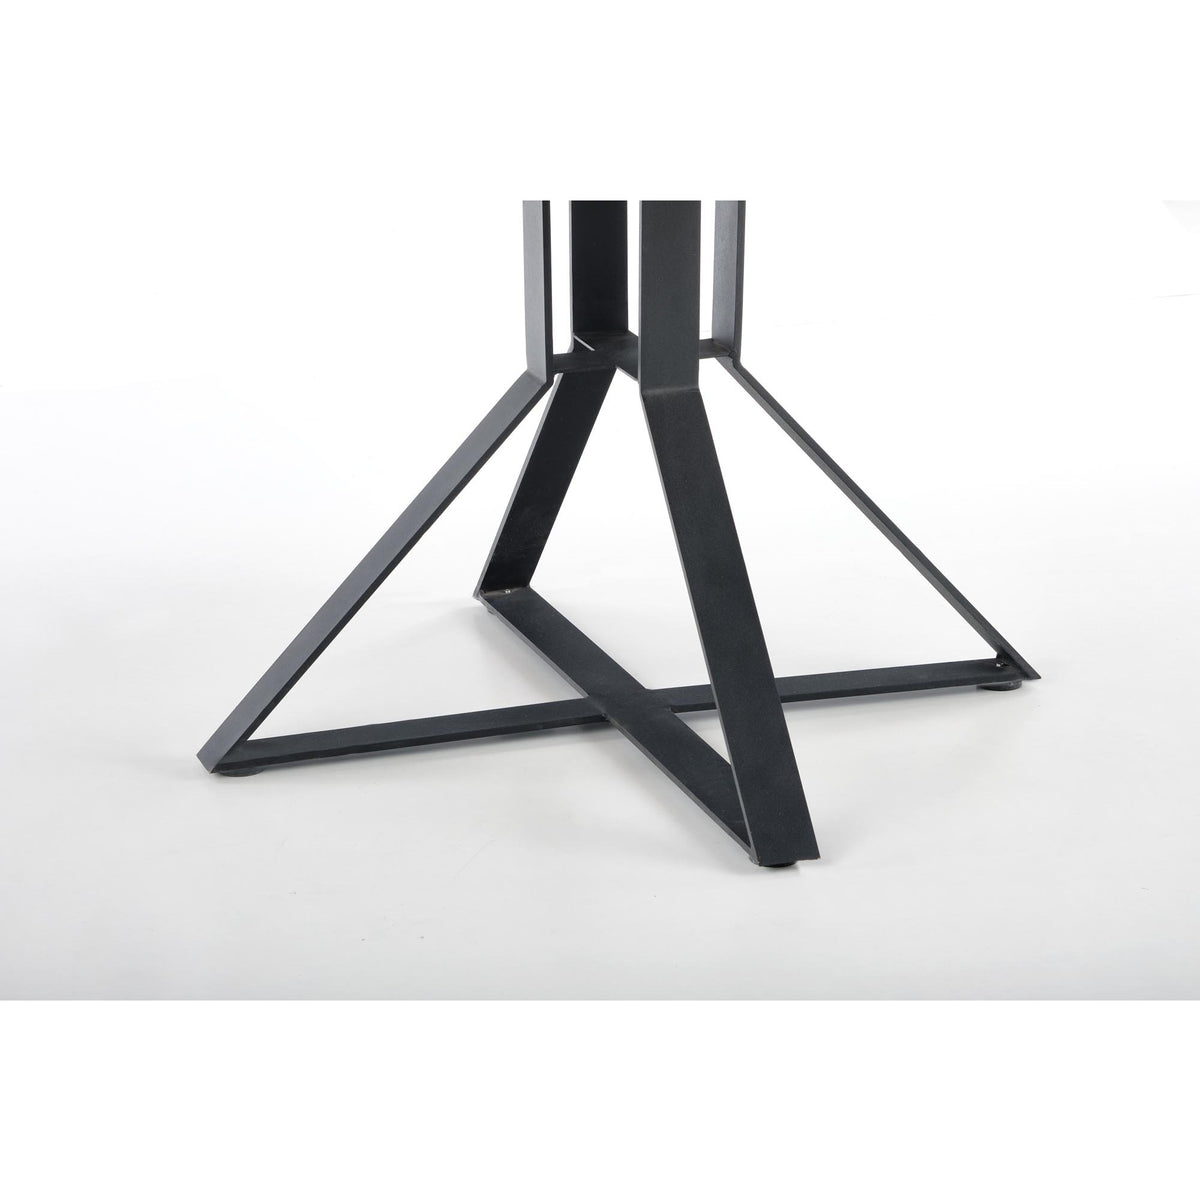 Jídelní stůl Keroy rozkládací 120-160x76x120 cm (dub, černá)